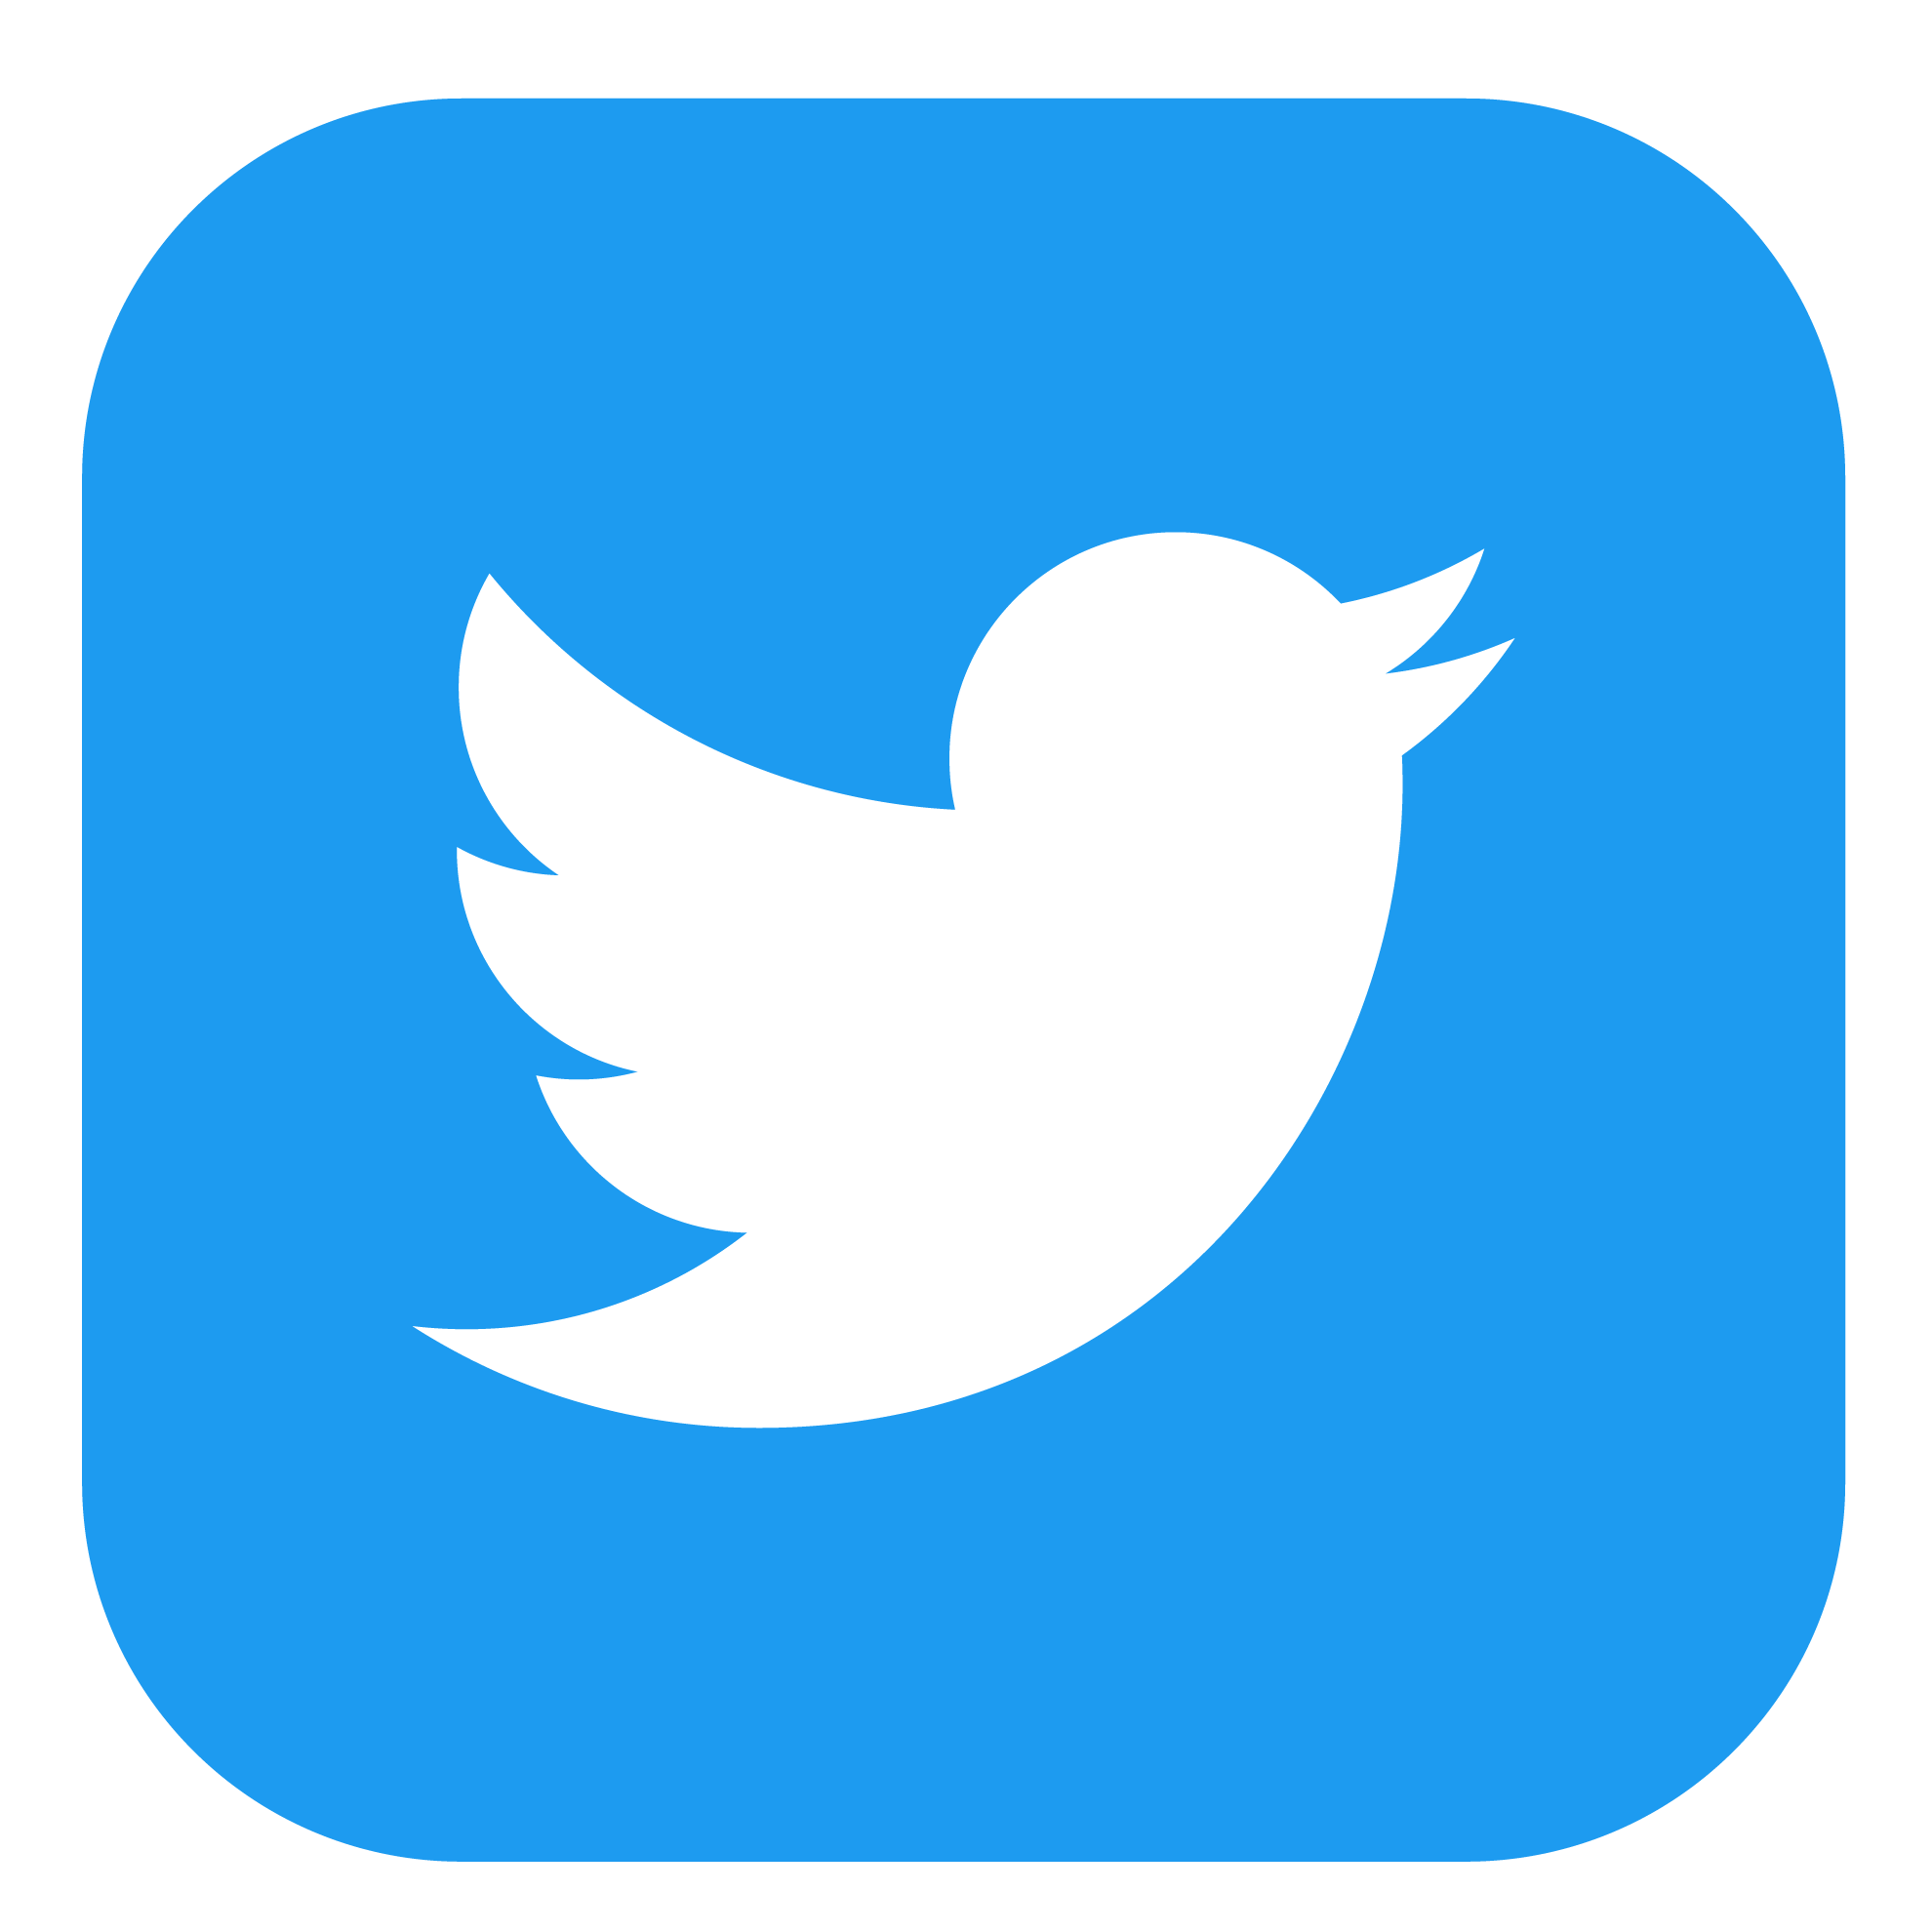 Logotipo de Twitter México en color azul